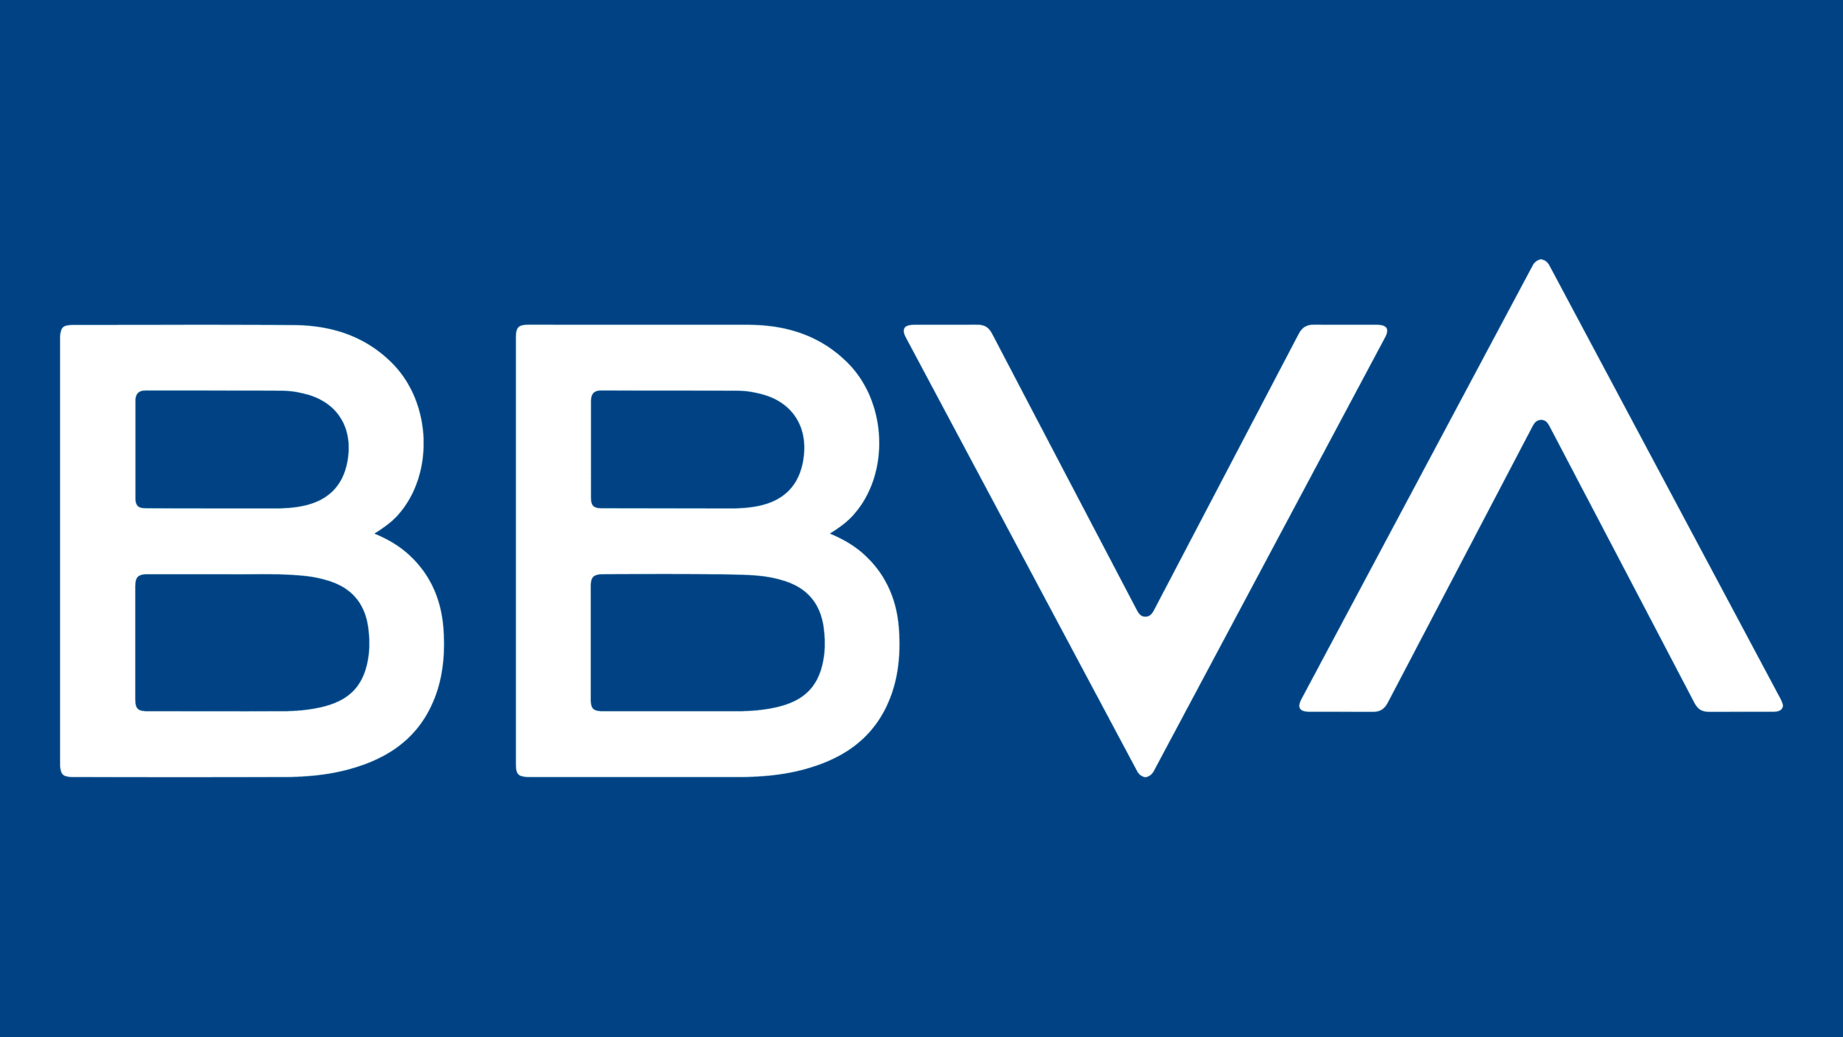 Bbva symbol